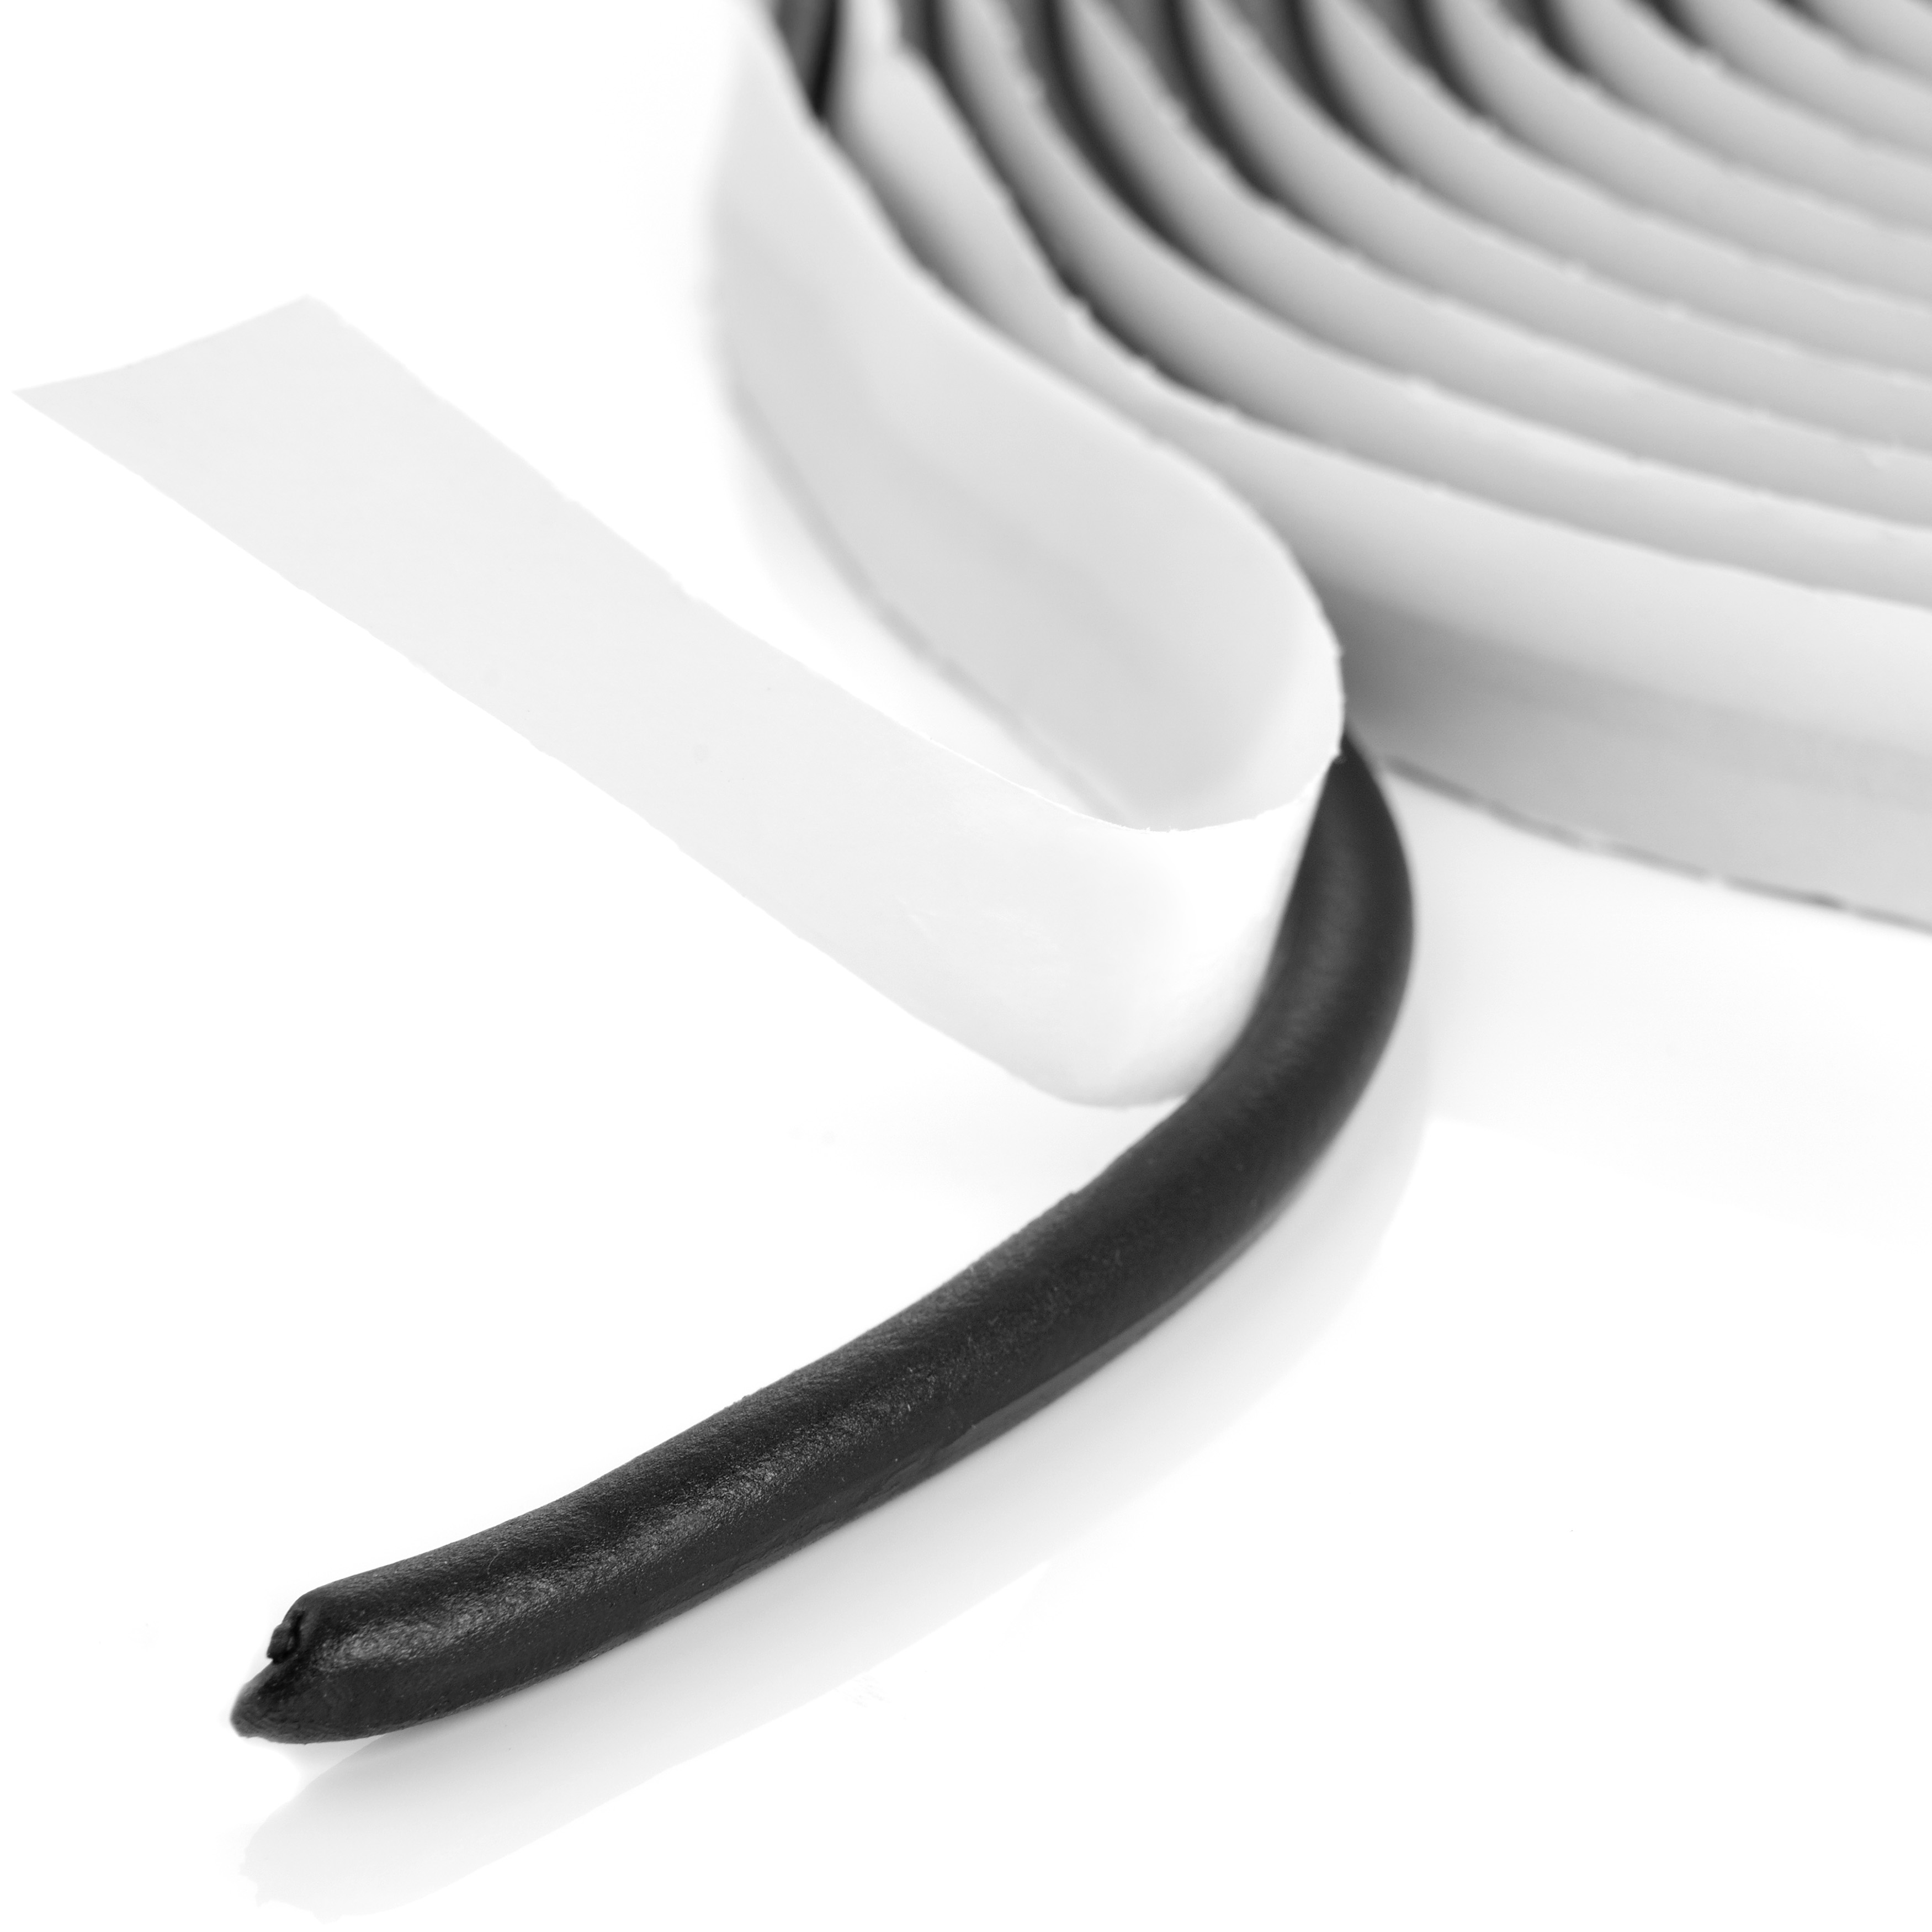 Poppstar Butylrundschnur Klebeband (5m x 6mm) Dichtband, schwarz, selbstklebend